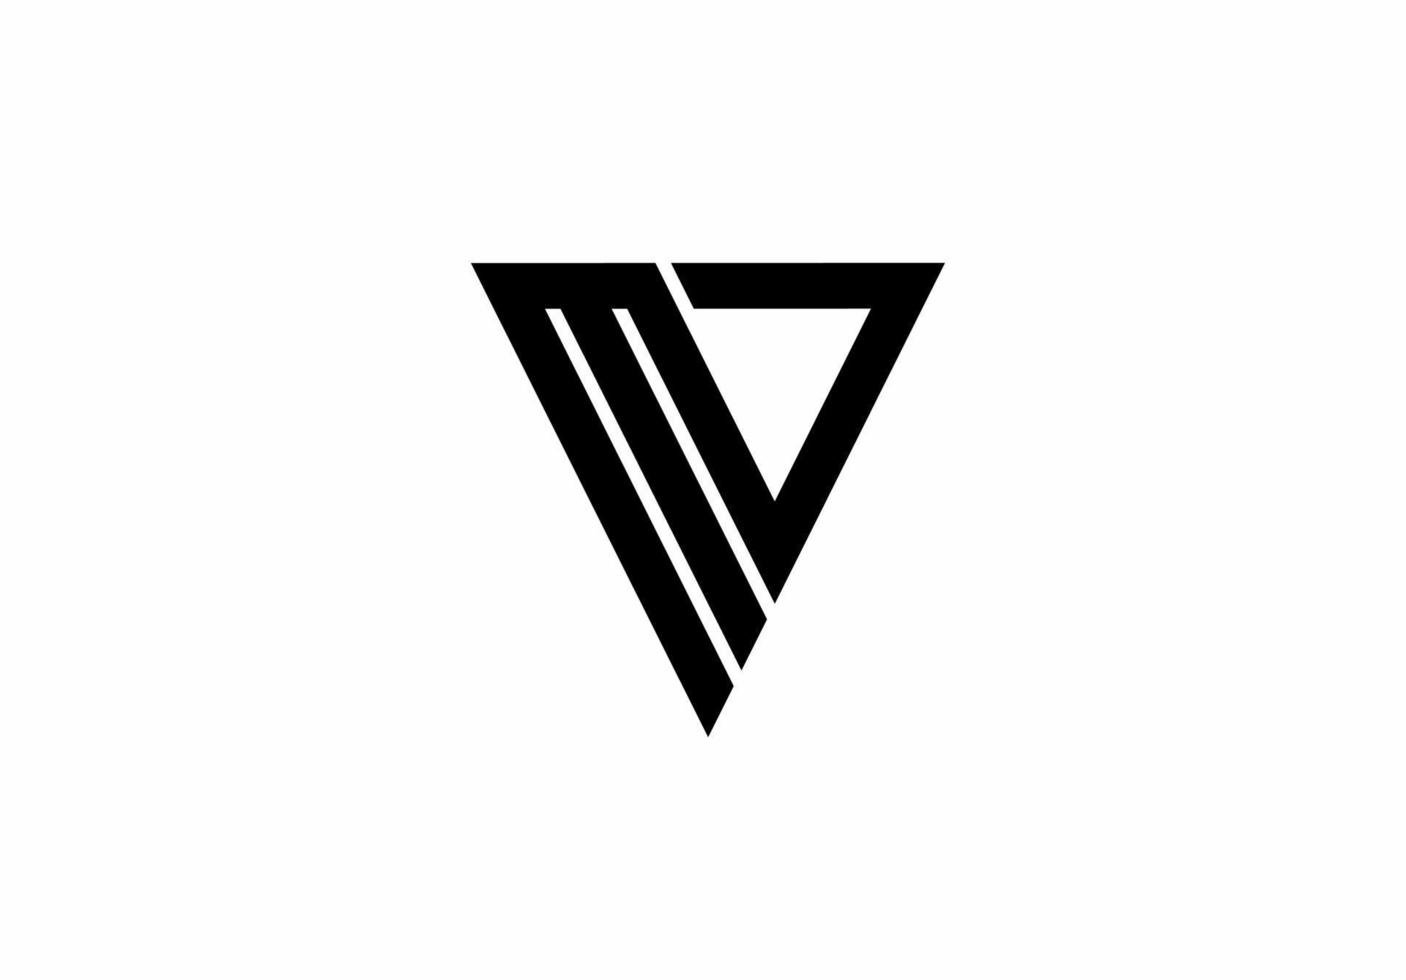 Khám phá logo chữ MV monogram với thiết kế độc đáo và tinh tế. Được trang trí với những họa tiết tinh tế cùng các chi tiết đồ hoạ, hình ảnh sẽ khiến bạn ấn tượng từ cái nhìn đầu tiên.